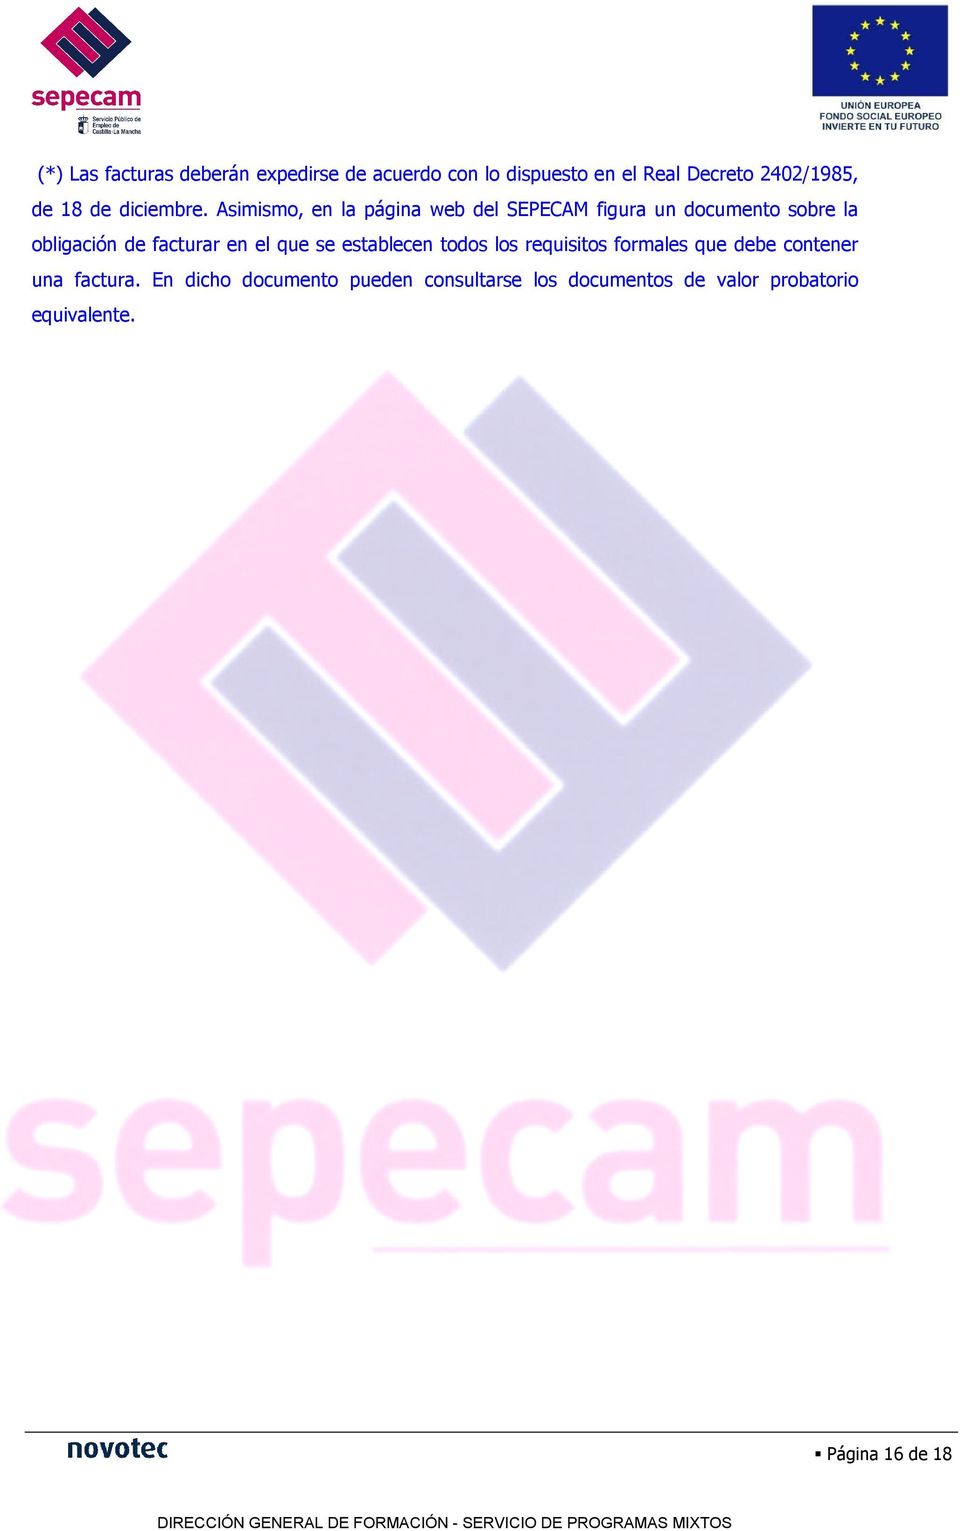 Asimismo, en la página web del SEPECAM figura un documento sobre la obligación de facturar en el